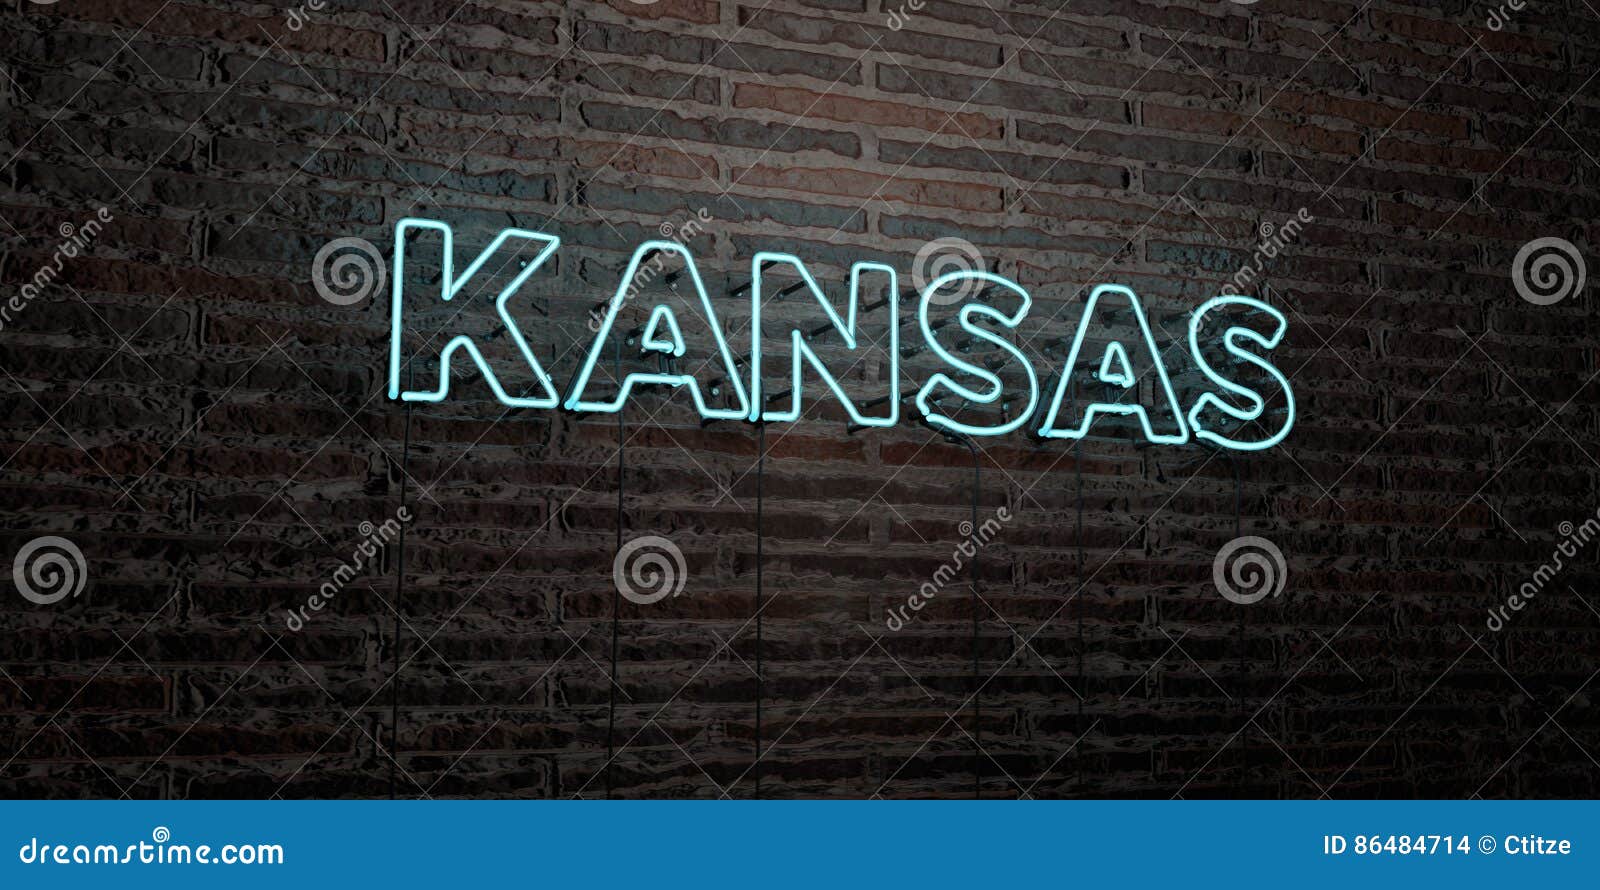 KANSAS - insegna al neon realistica sul fondo del muro di mattoni - 3D ha reso l'immagine di riserva libera della sovranità Può essere usato per gli annunci online dell'insegna e dirigere i bollettini